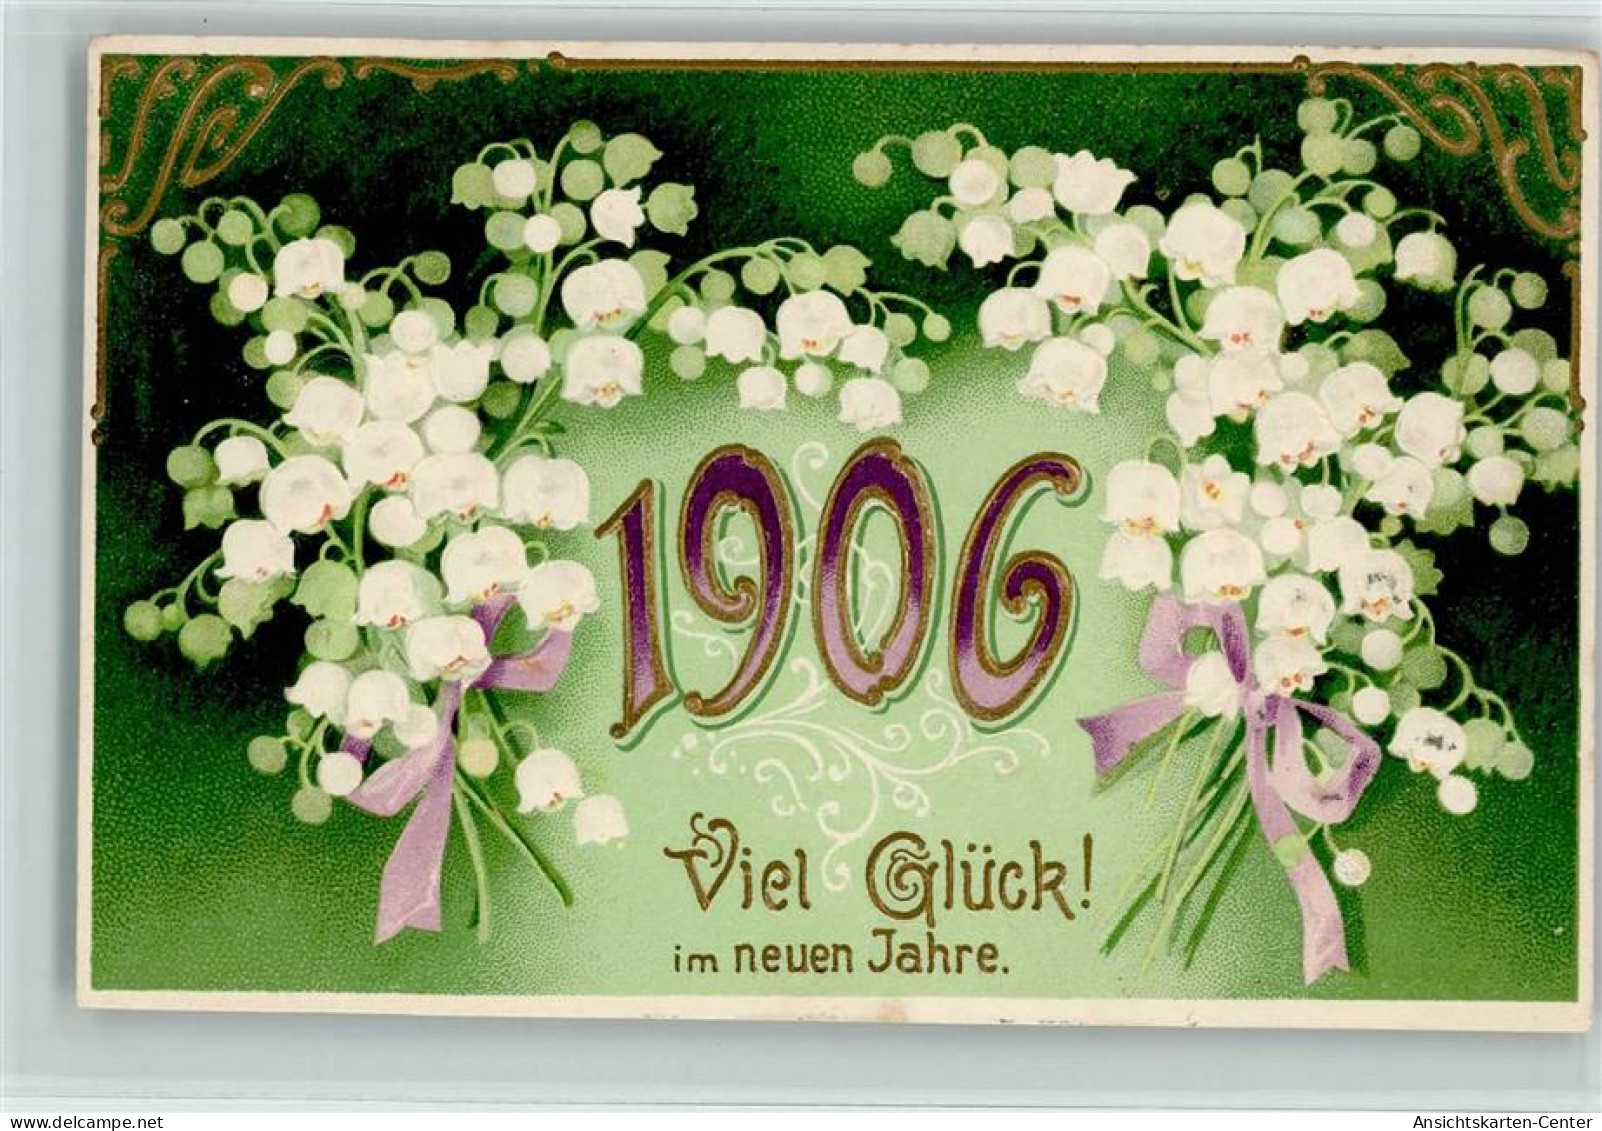 13103909 - Jahreszahlen Jahr 1906 , Maigloeckchen, Erika - New Year